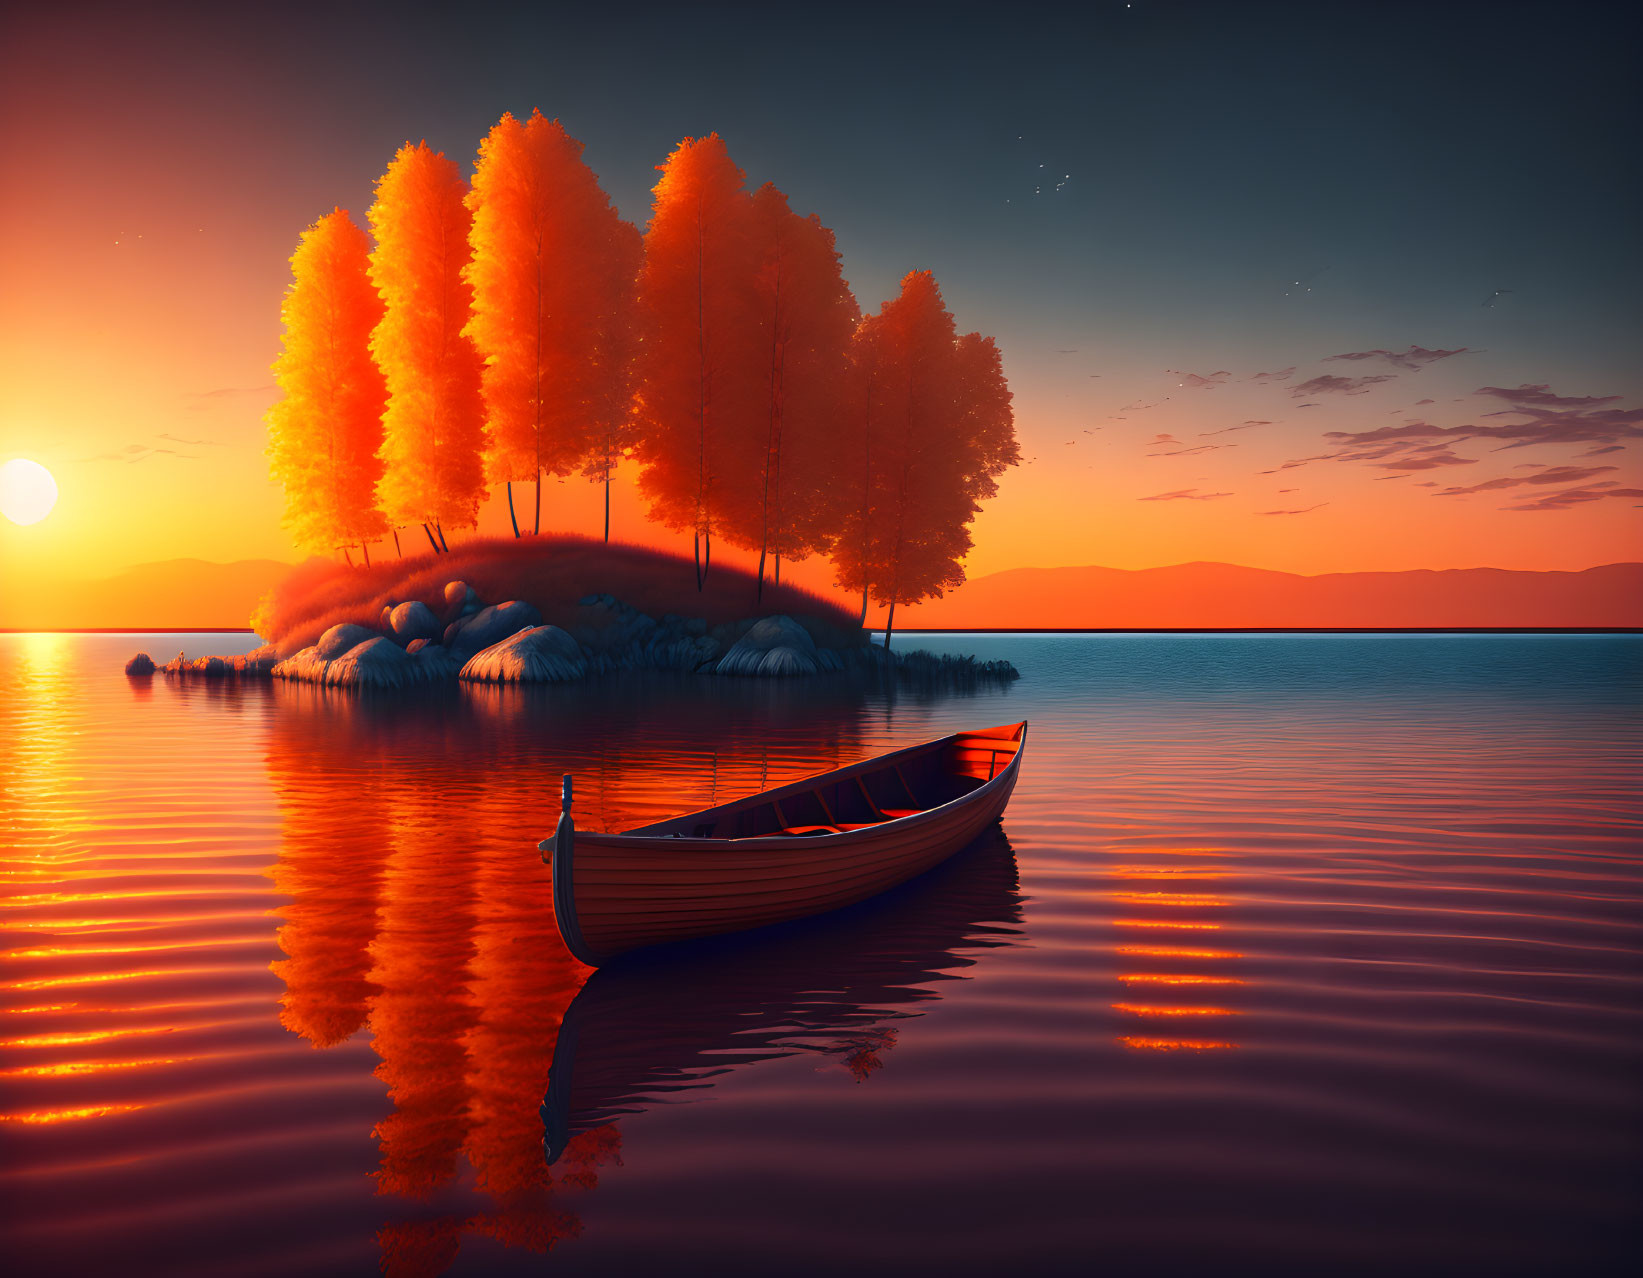 Tranquil sunset canoe scene near vibrant orange trees